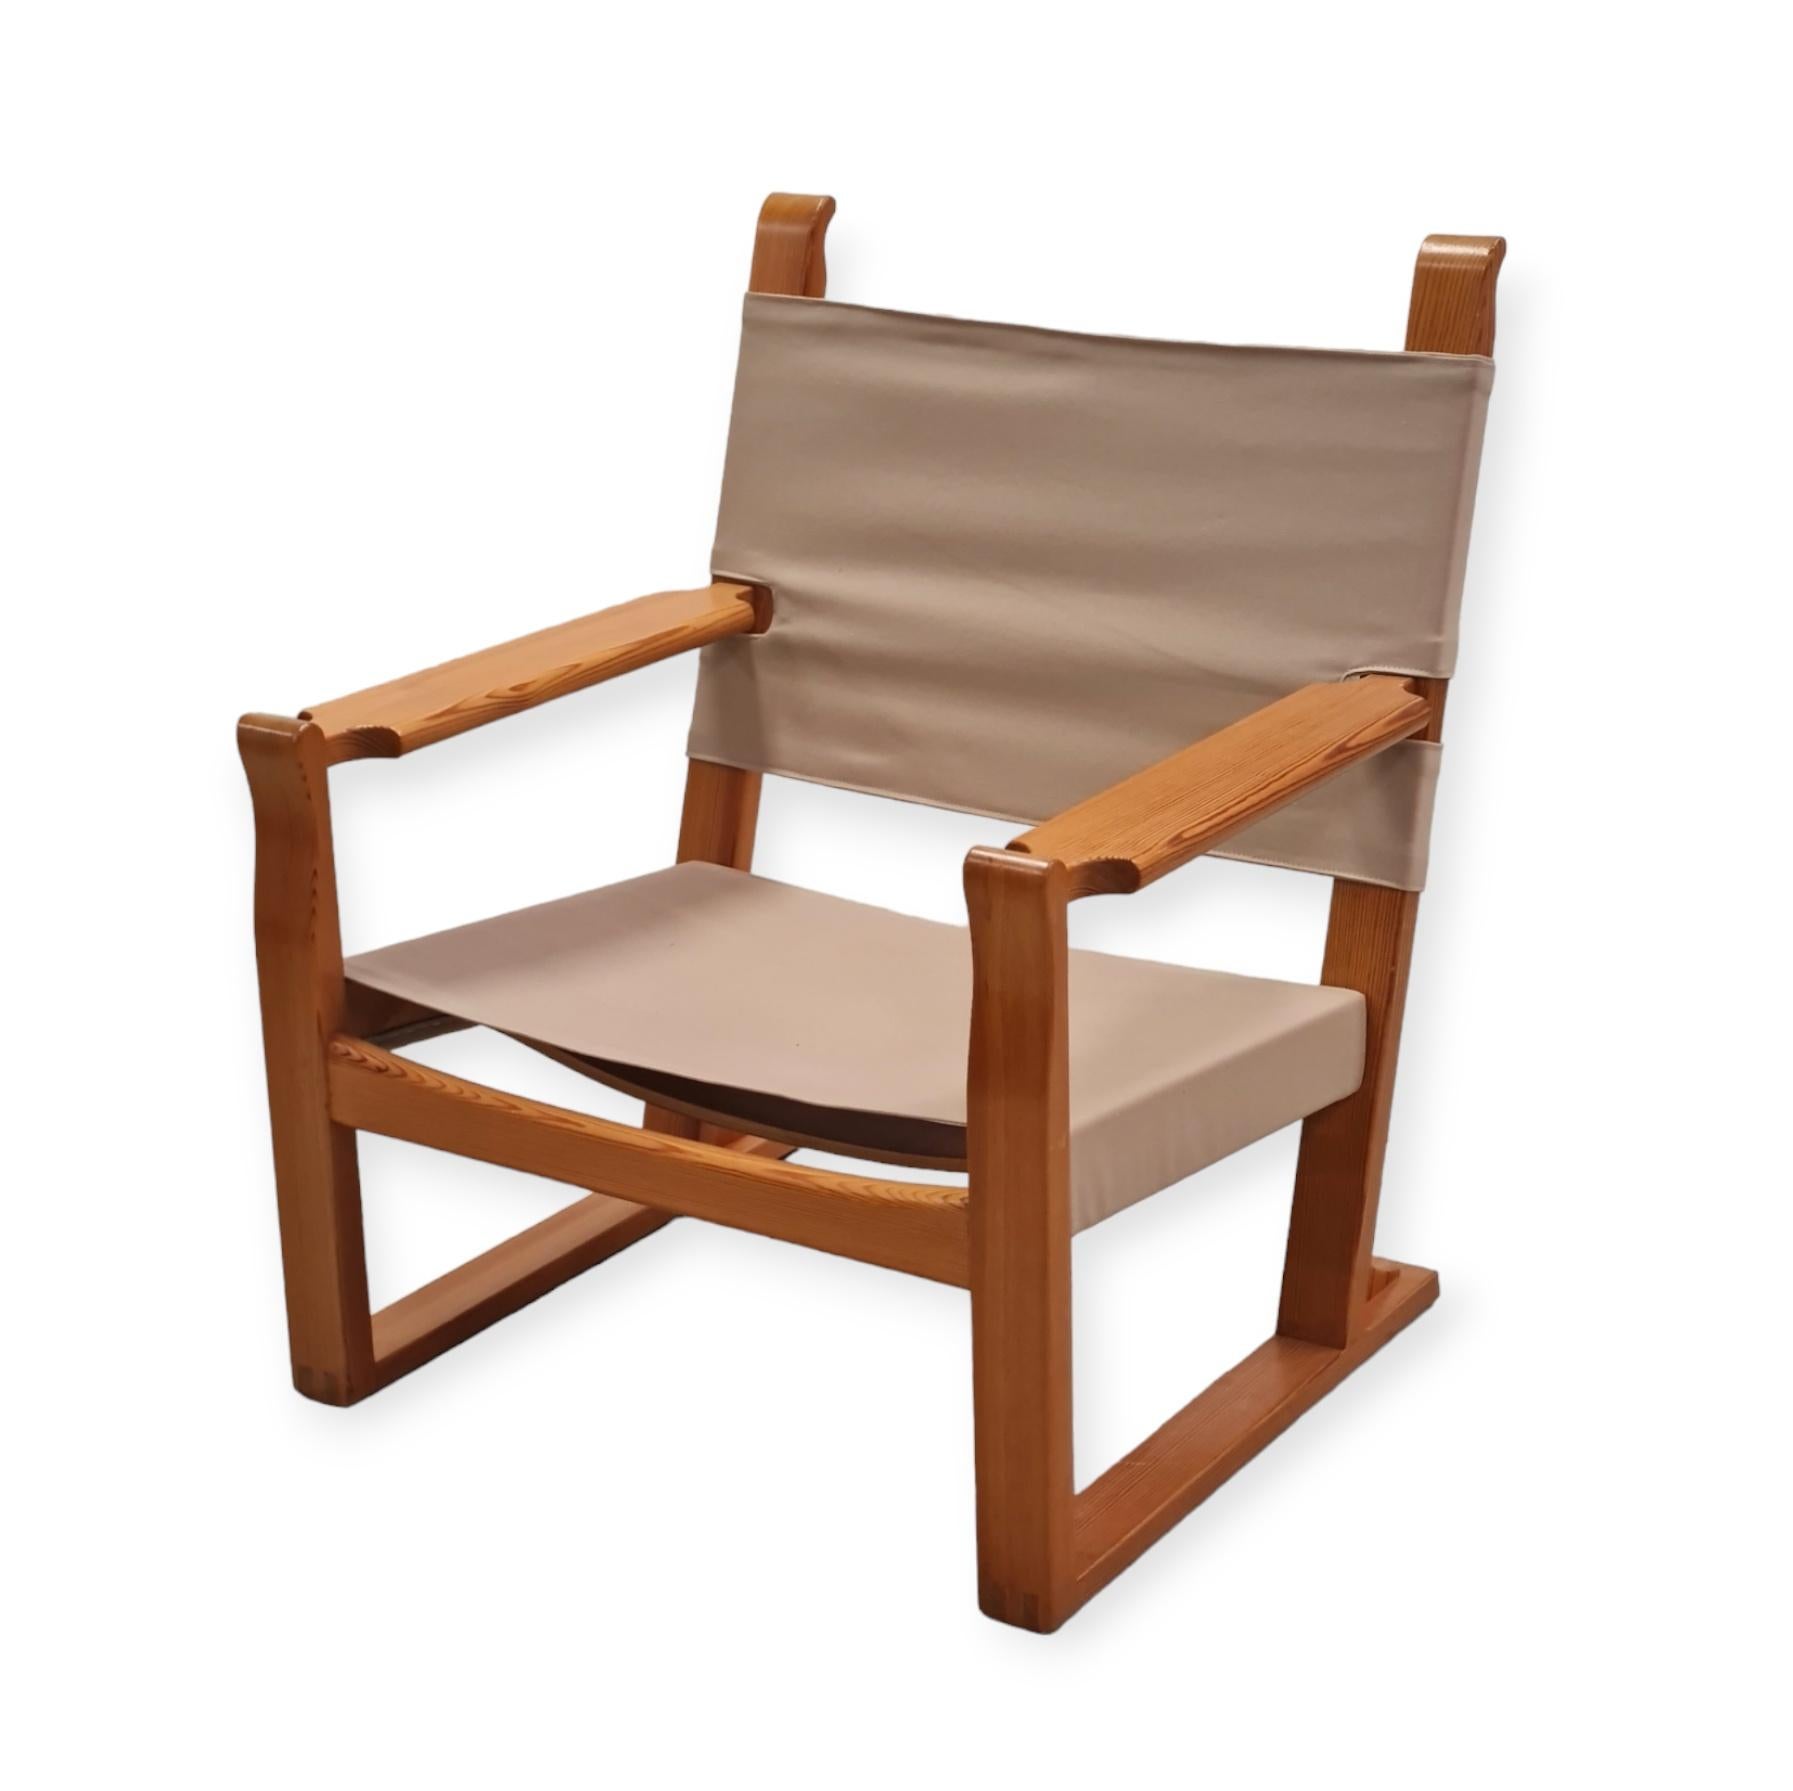 Ce fauteuil est un chef-d'œuvre de design quand on voit à quel point il est simple et élégant.  Le pin a été largement utilisé par différents designers de meubles dans les années 1930-1970, pour des raisons évidentes, principalement l'aspect proche